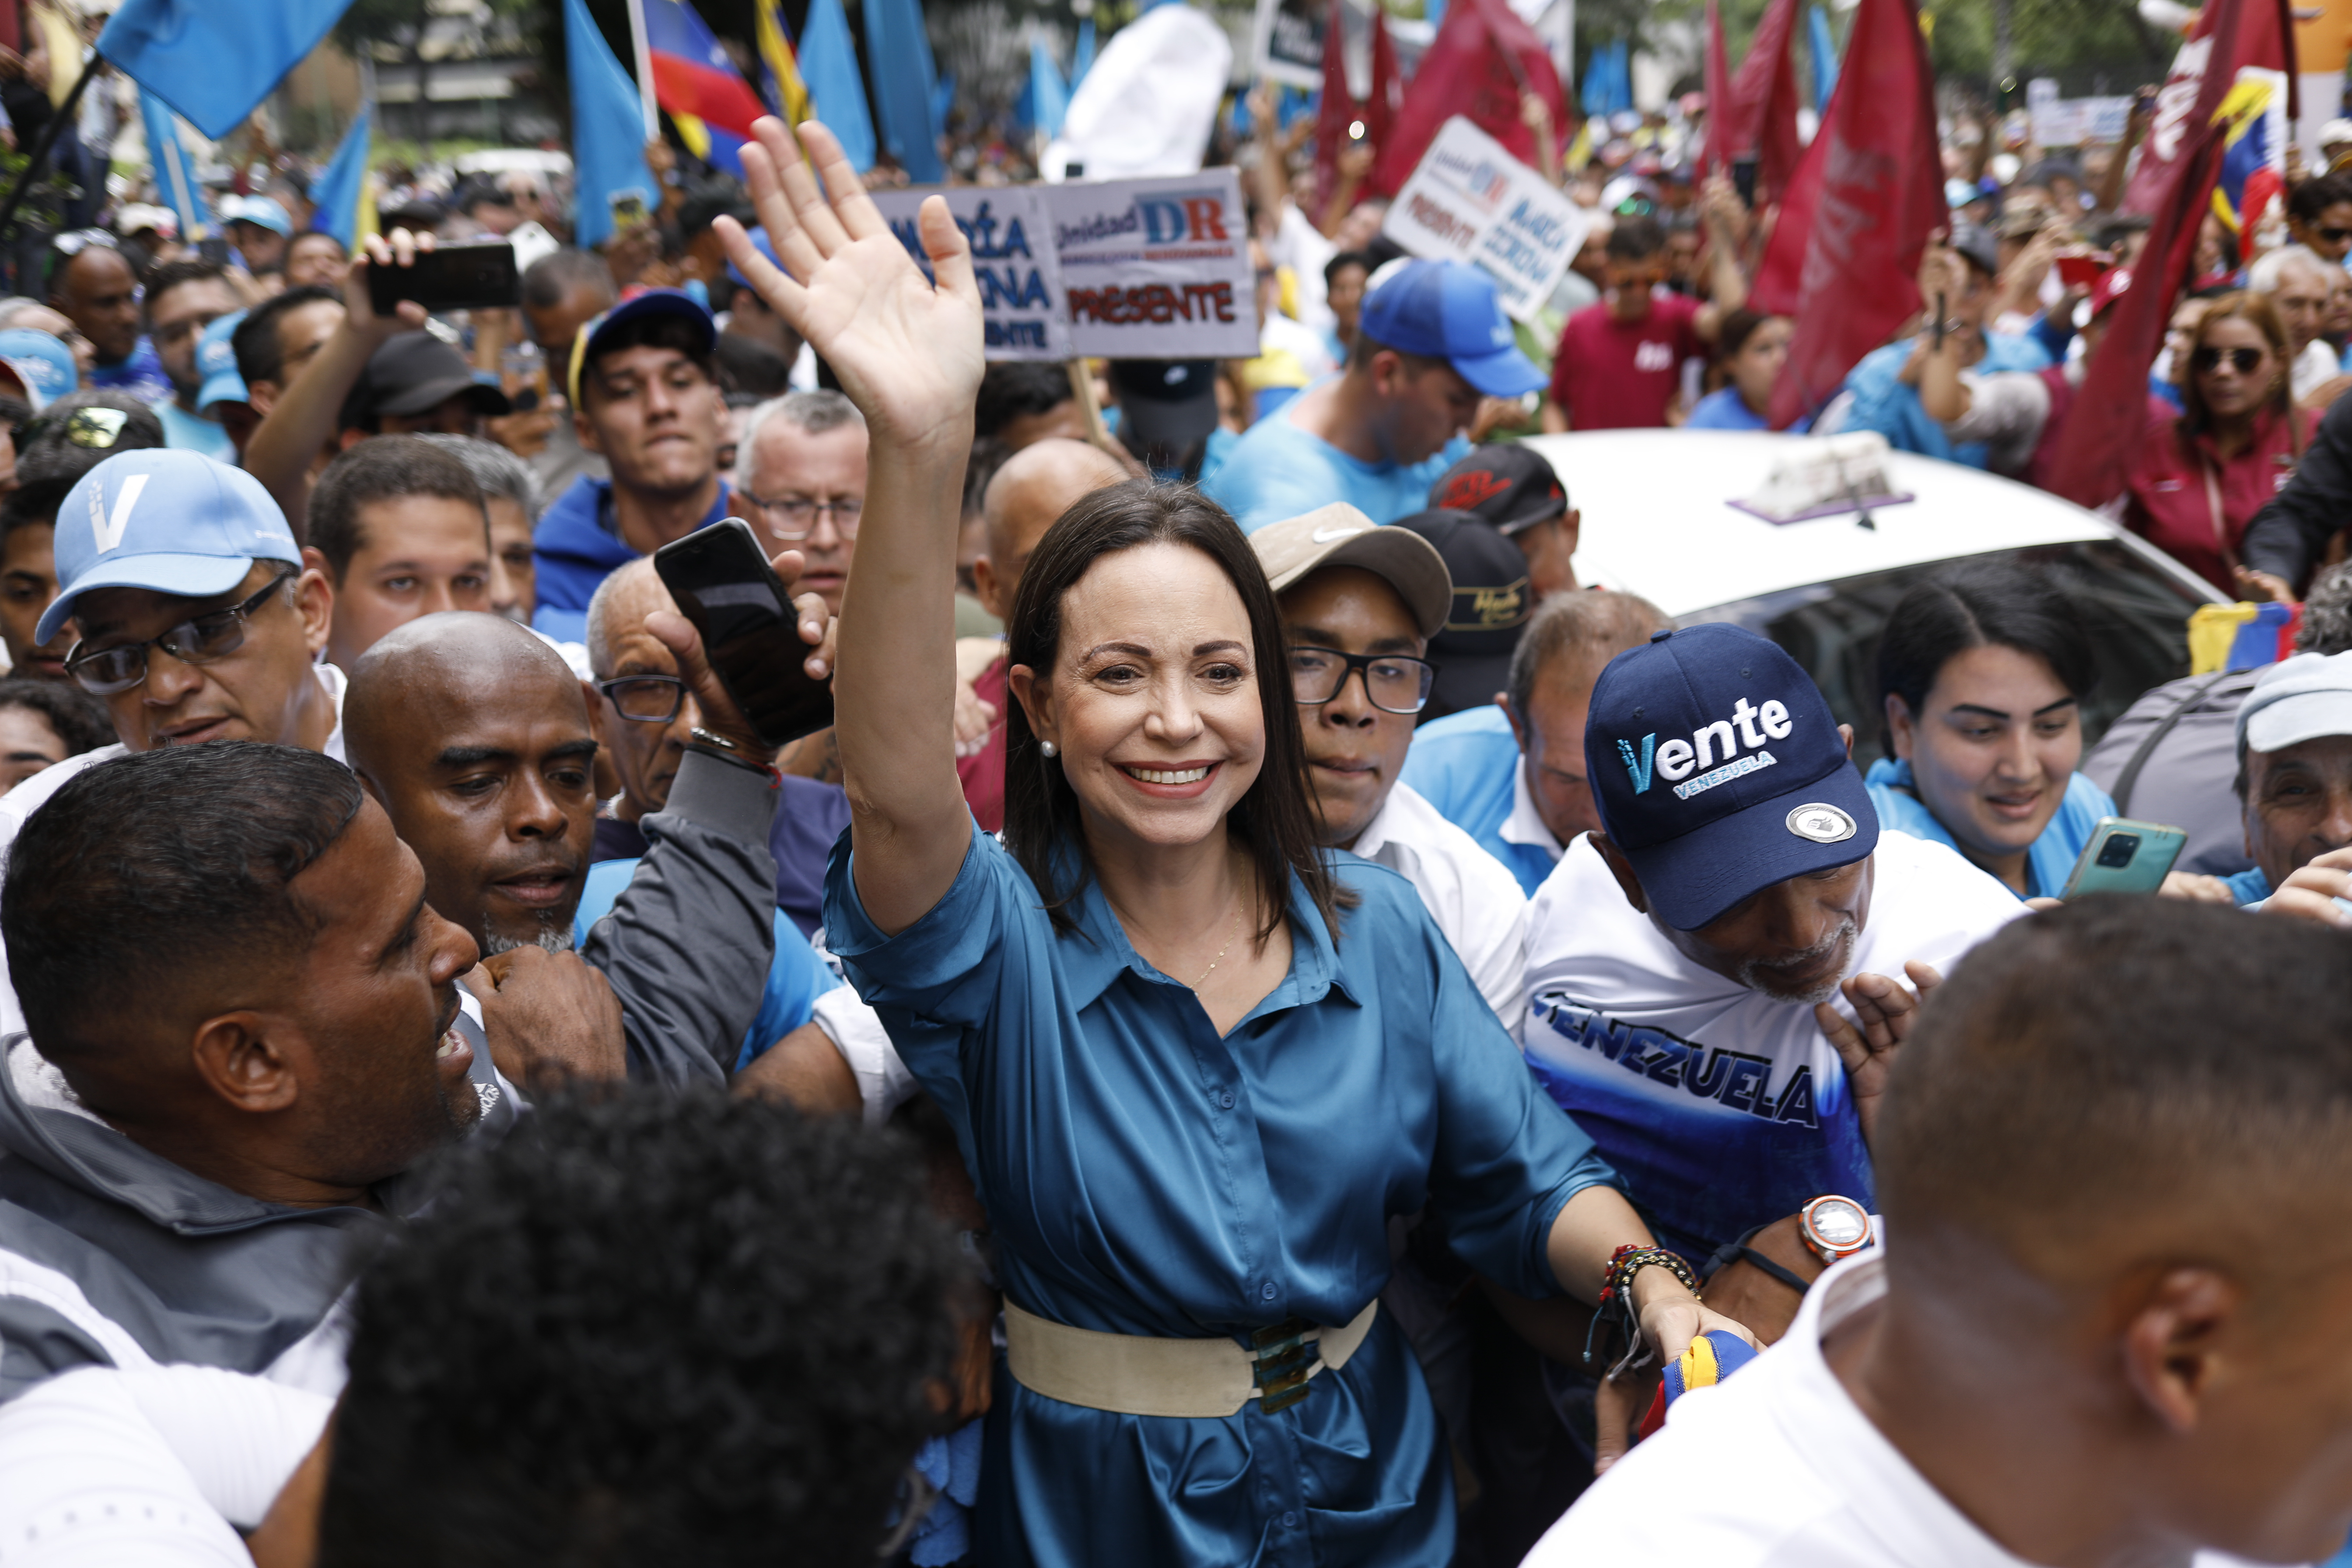 Die venezolanische Oppositionsführerin Maria Corina Machado marschiert mit ihren Anhängern, um die Registrierung ihrer Kandidatur für die Vorwahlen der Opposition am 22. Oktober vor der Nationalen Kommission für Vorwahlen auf der Plaza Altamira in Caracas, Venezuela, zu formalisieren